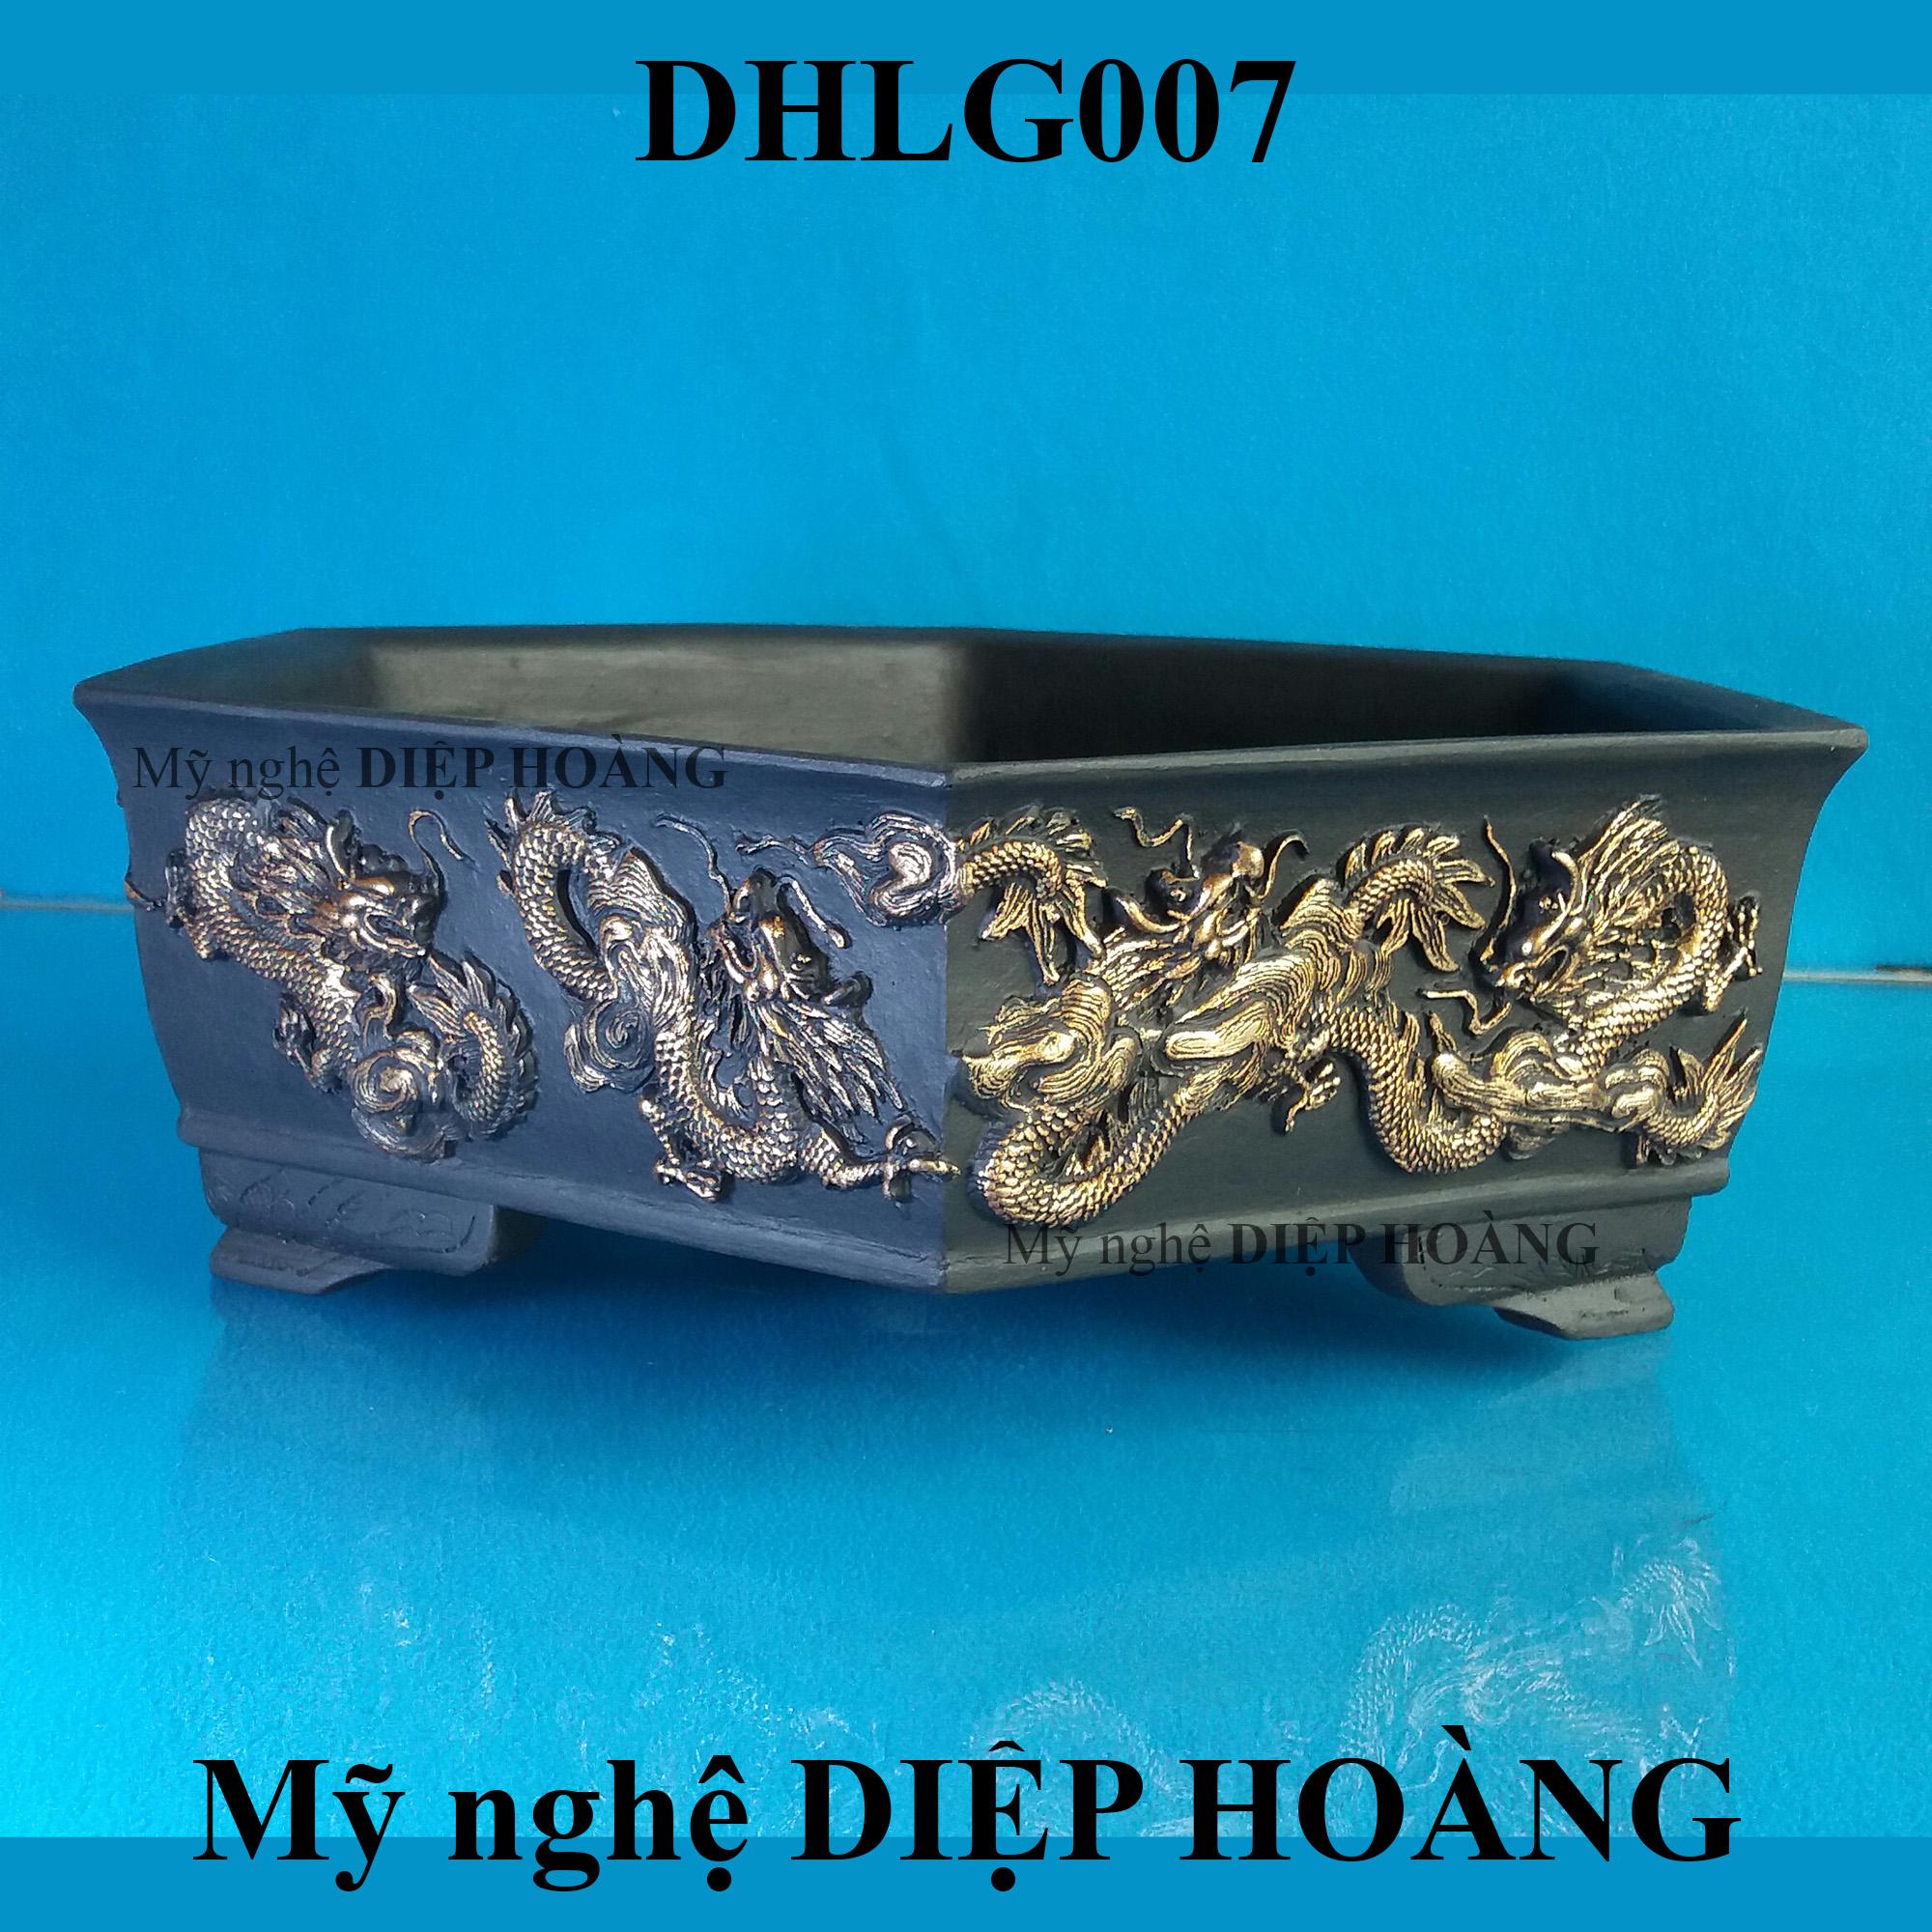 Chậu kiểng DIỆP HOÀNG - DHLG007